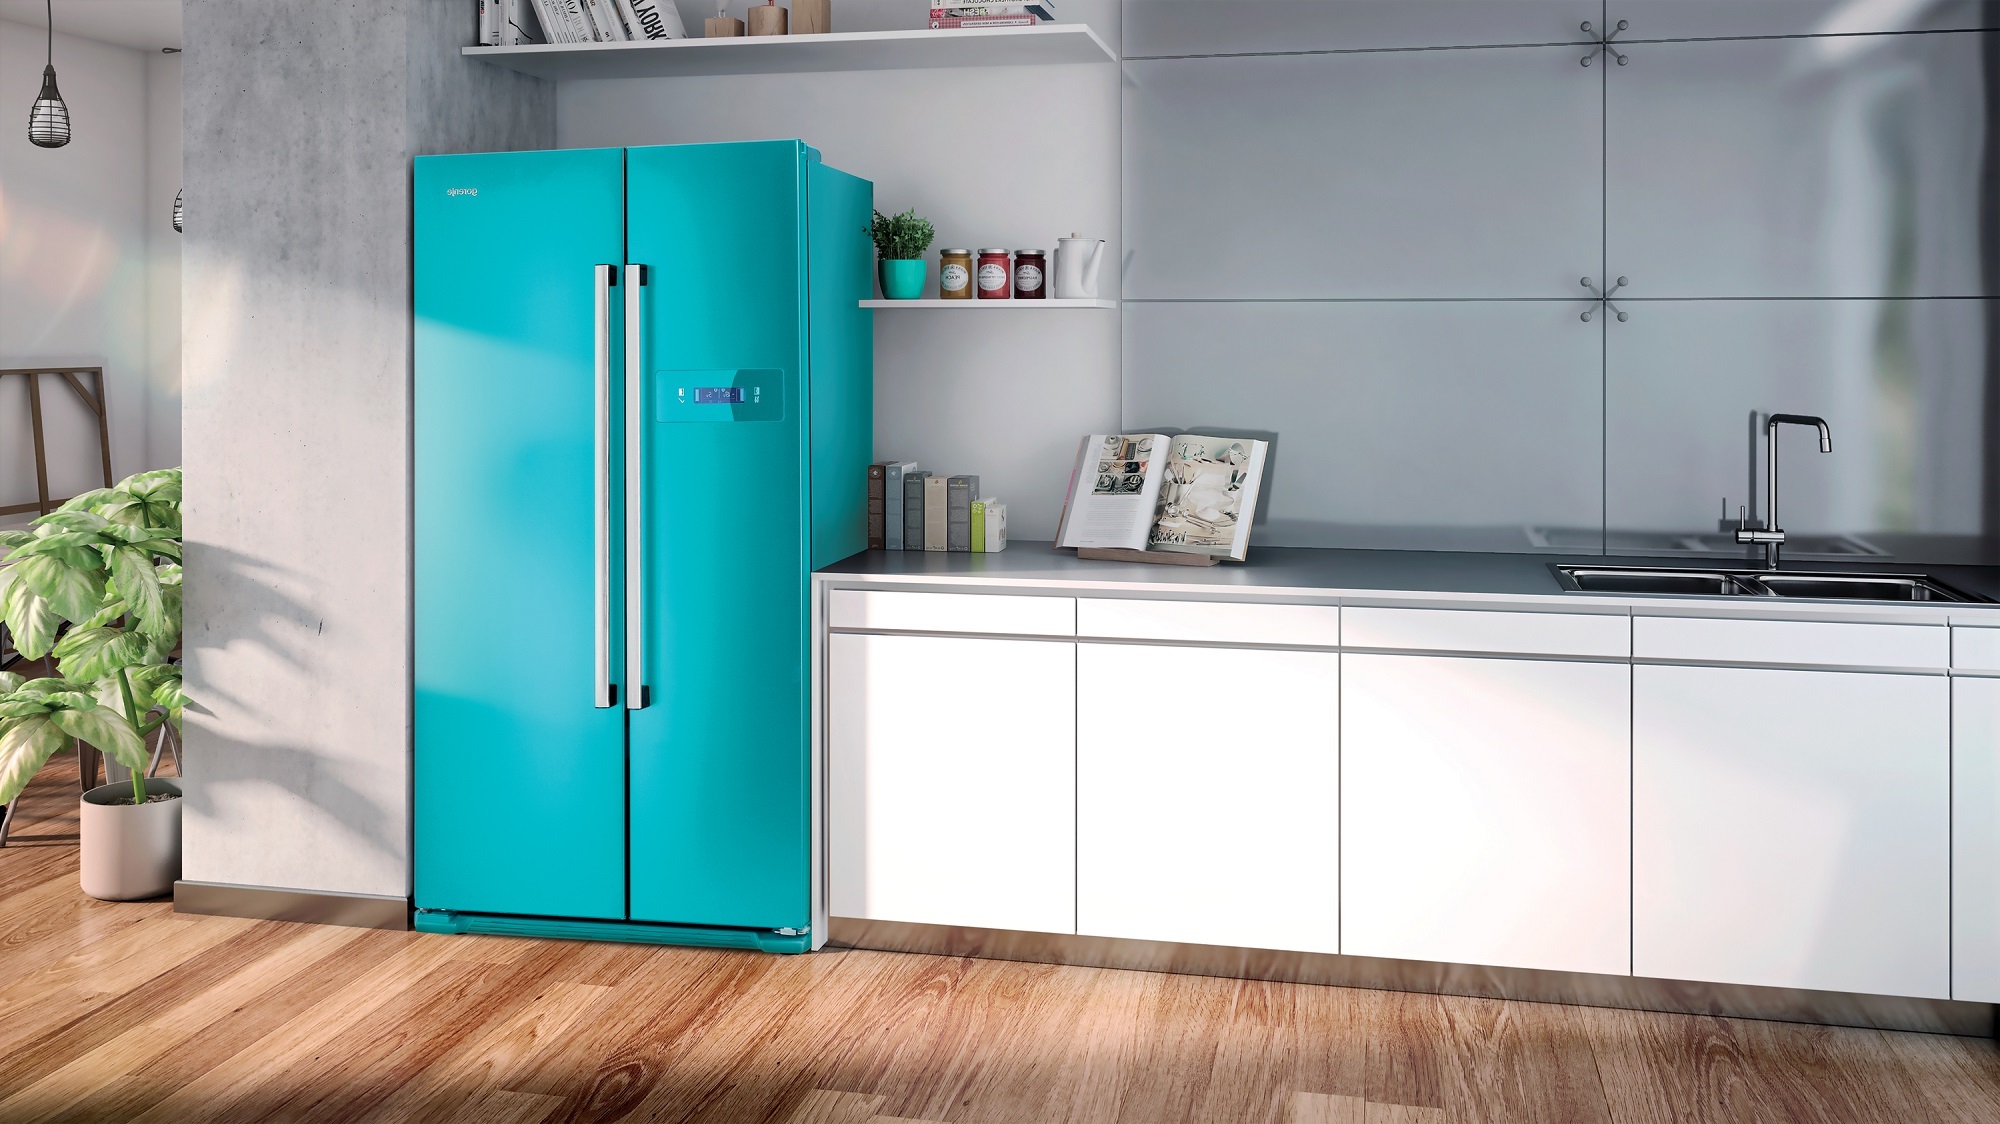 яркий холодильник в интерьере кухни